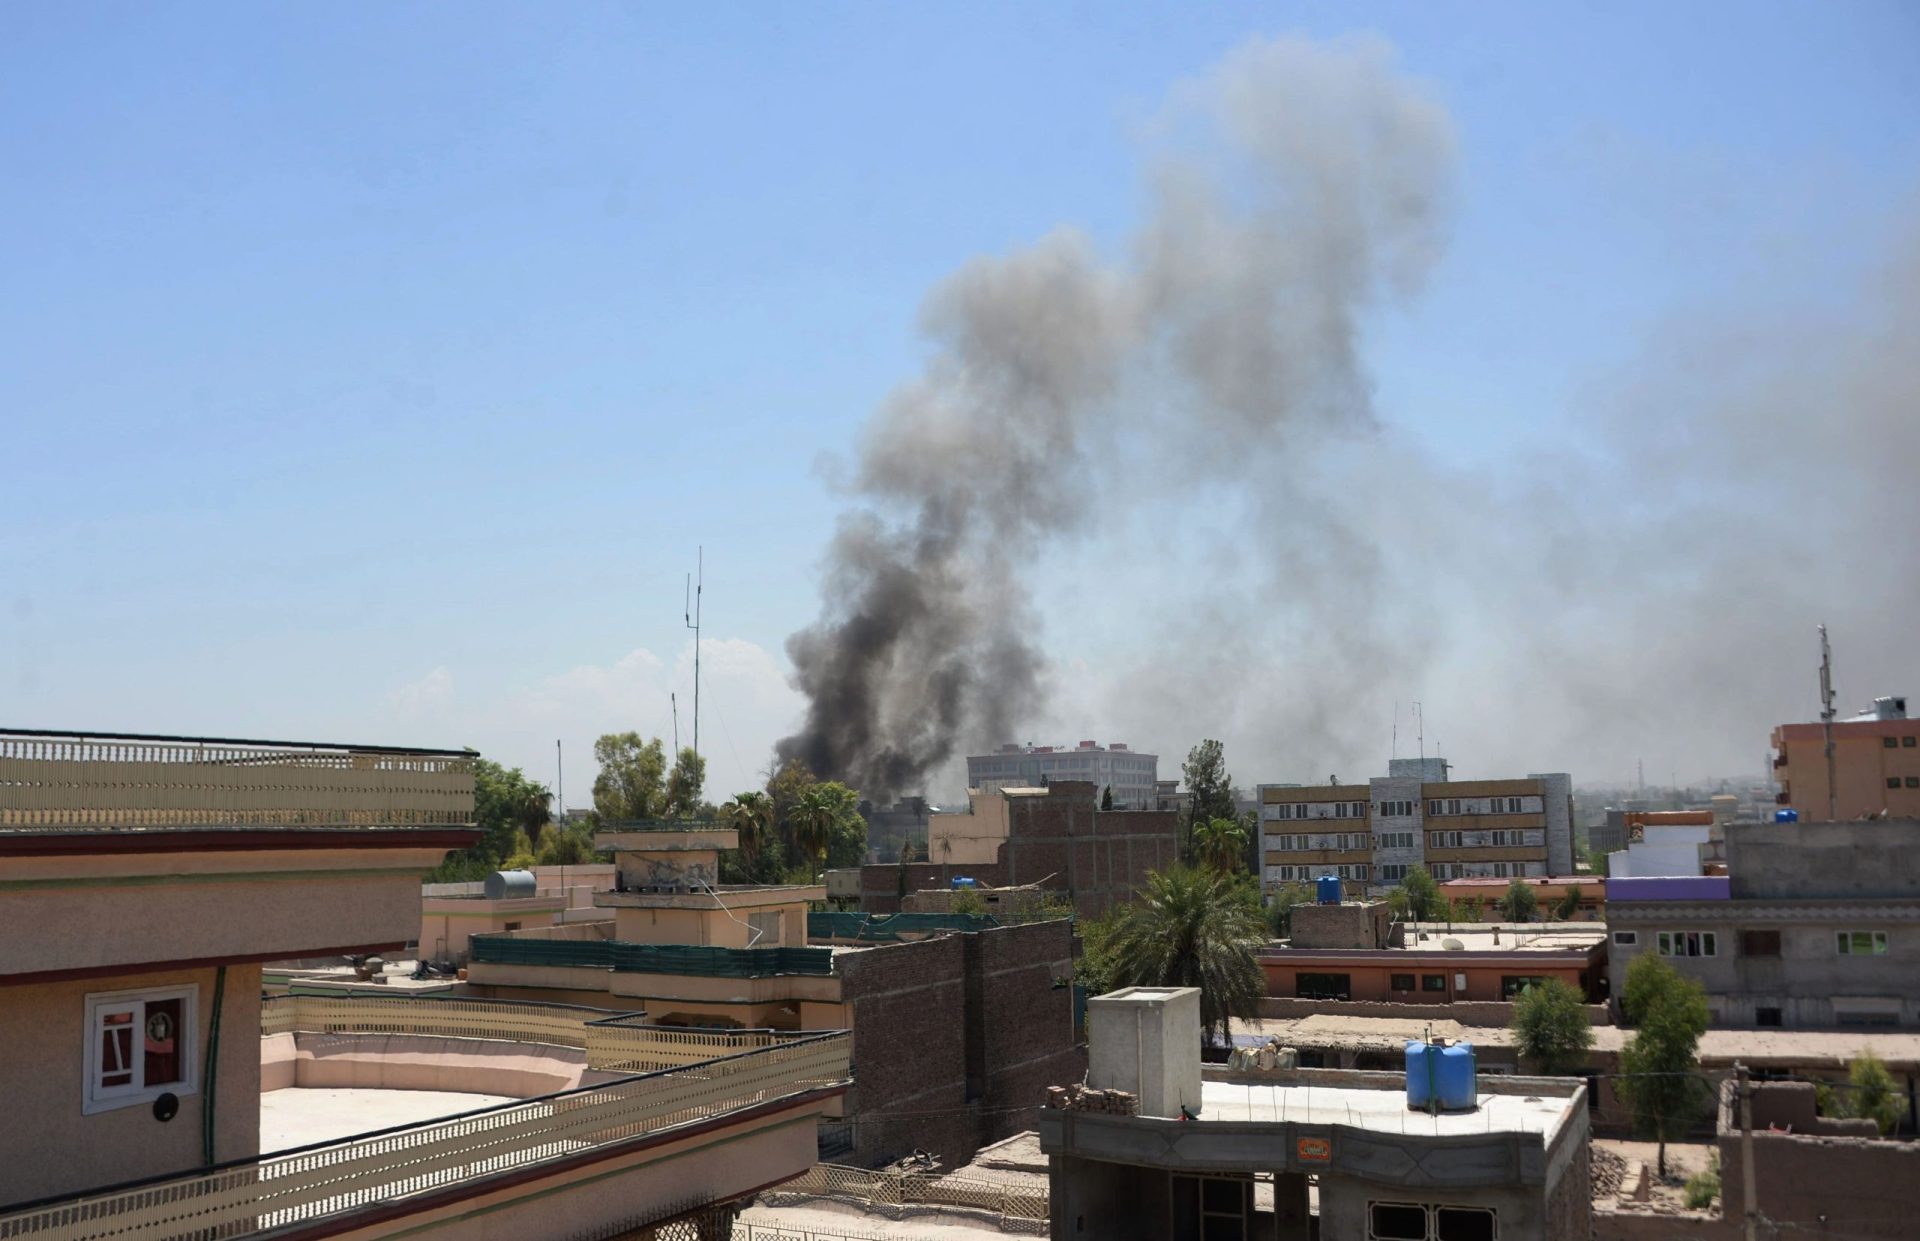 18 mortos e 15 feridos em ataque a edifício governamental em Jalalabad